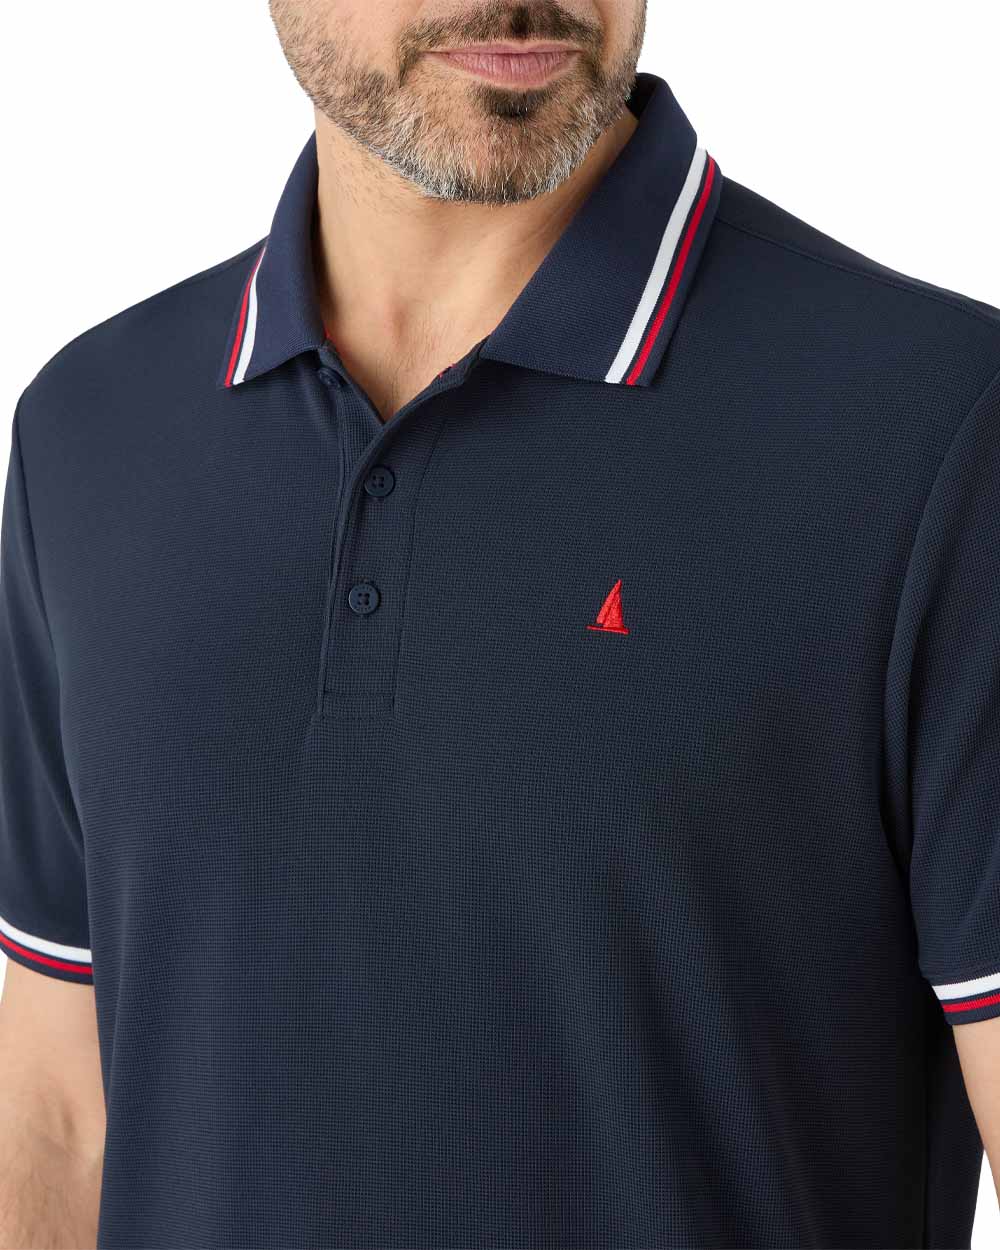 Musto Mens Evolution Pro Lite Short Sleeved Polo Shirt